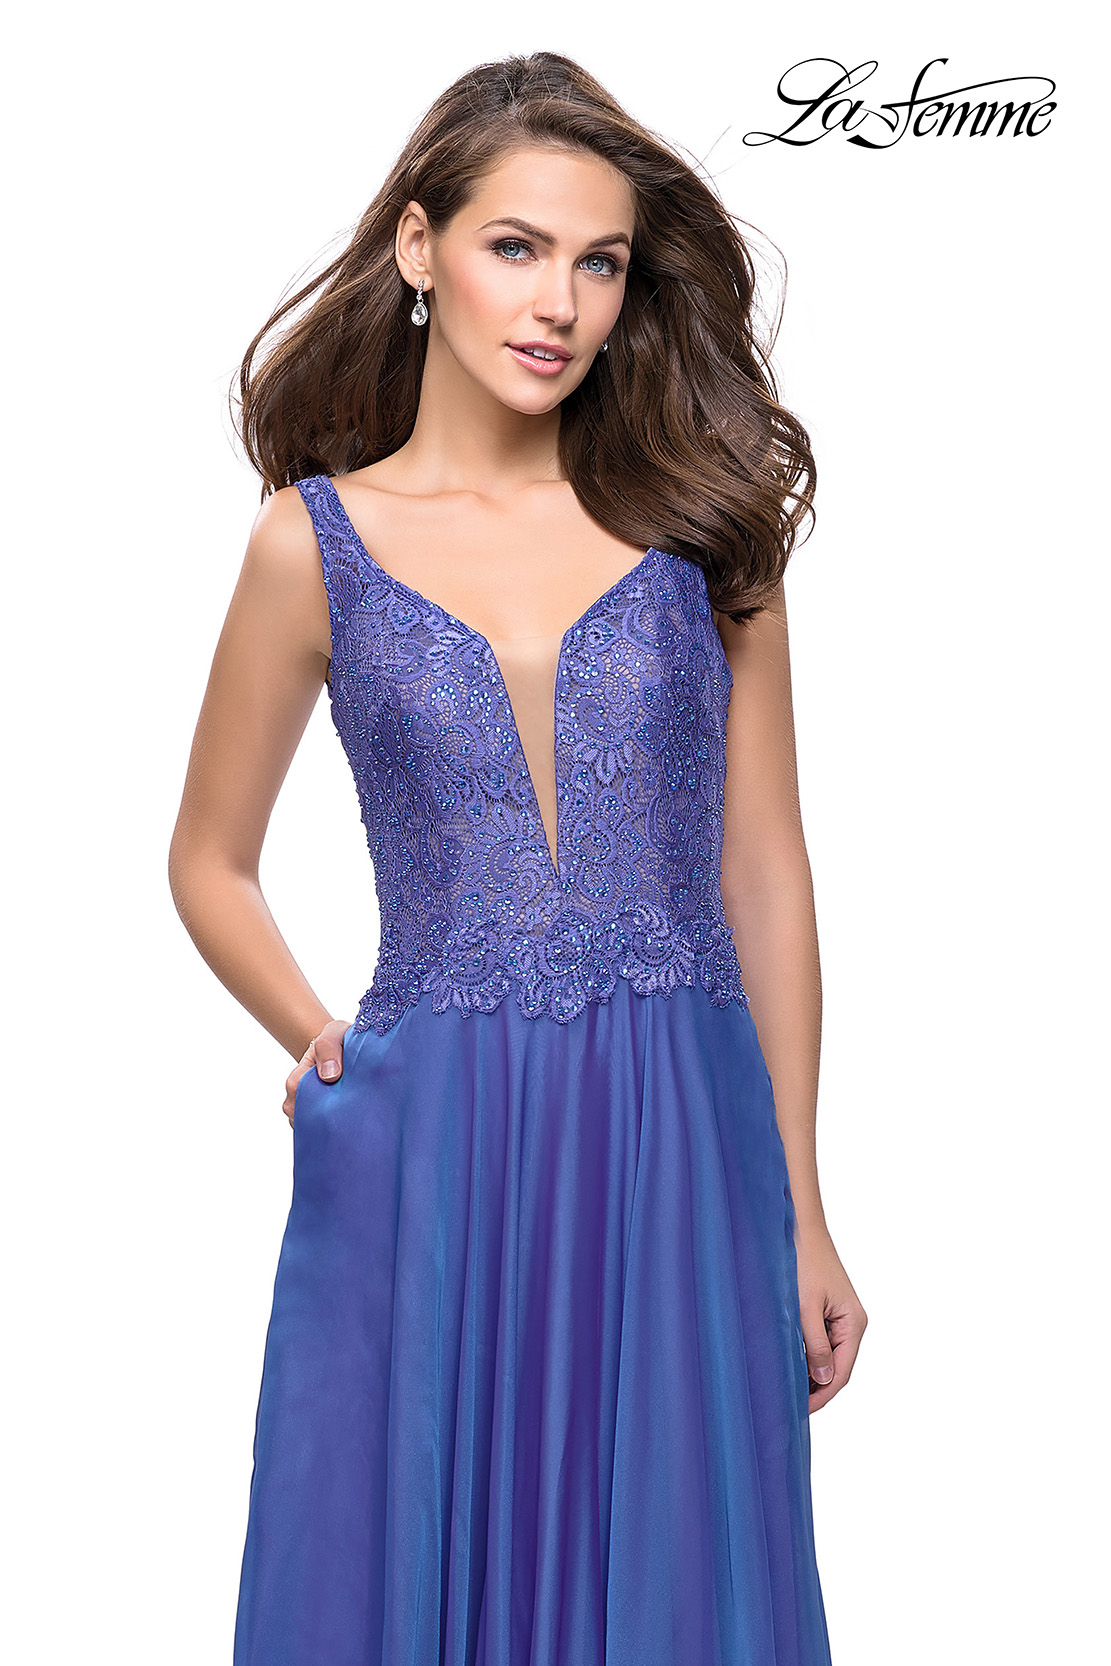 Ralph Lauren women's dress long Blue/purple, Formal/Wedding Size~4 | eBay